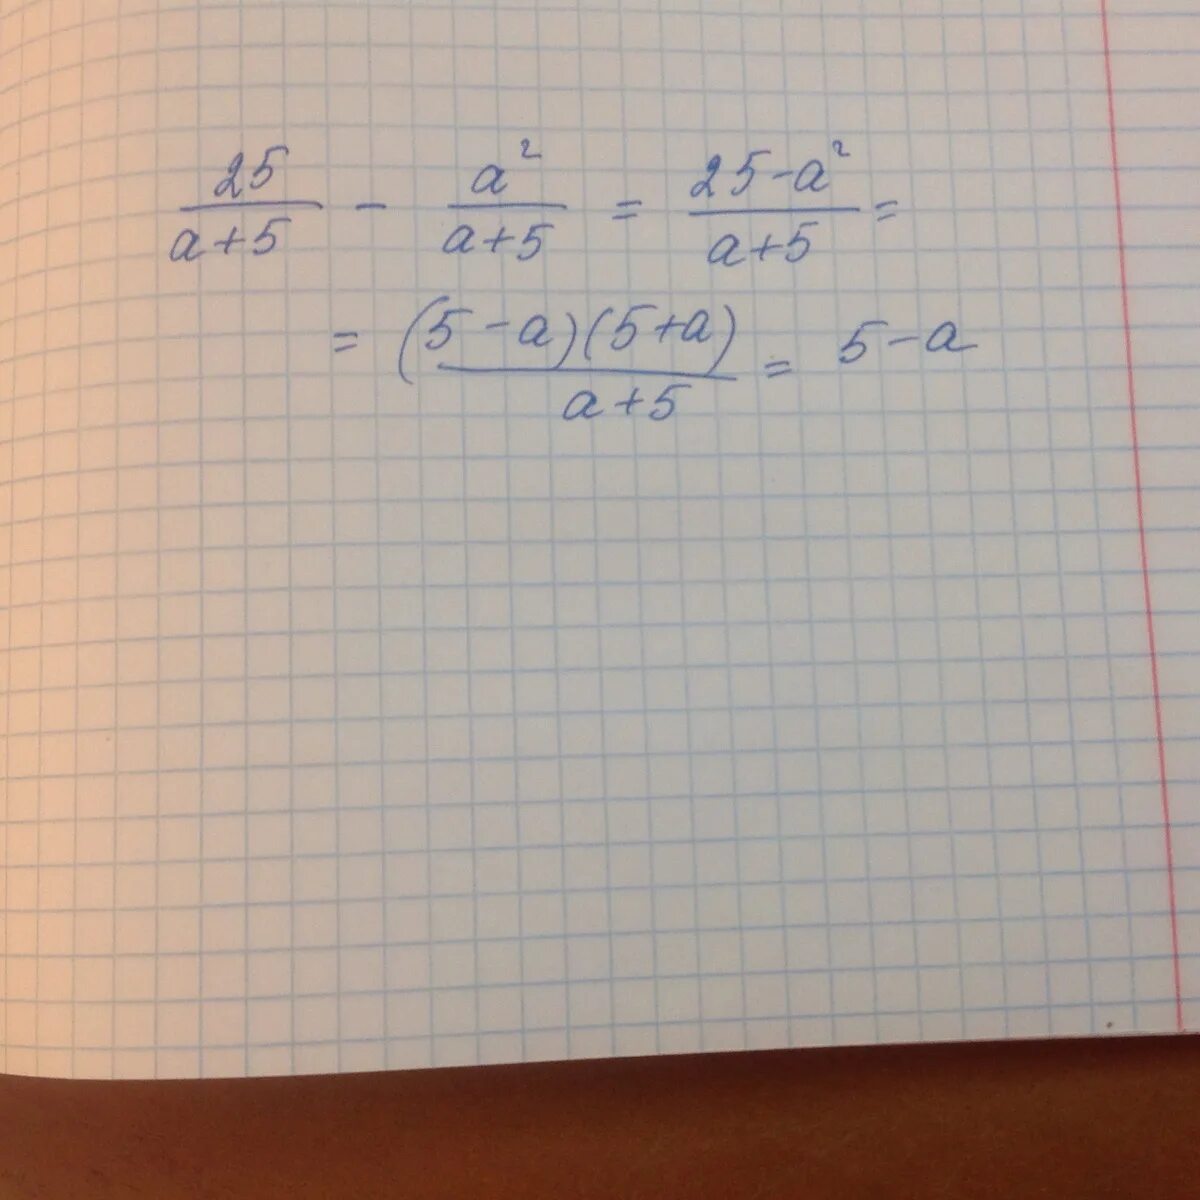 Выражение а 5 а 5 решение. 2а/а-5-5/а+5+2а2/25-а2. 5:2/5. 2a / a-5 - 5 / a+5 + 2a/ 25 - a упростить. (A/A-5-A/A+5-A+25/25-A^2)*A-5/A^2+10a+25.